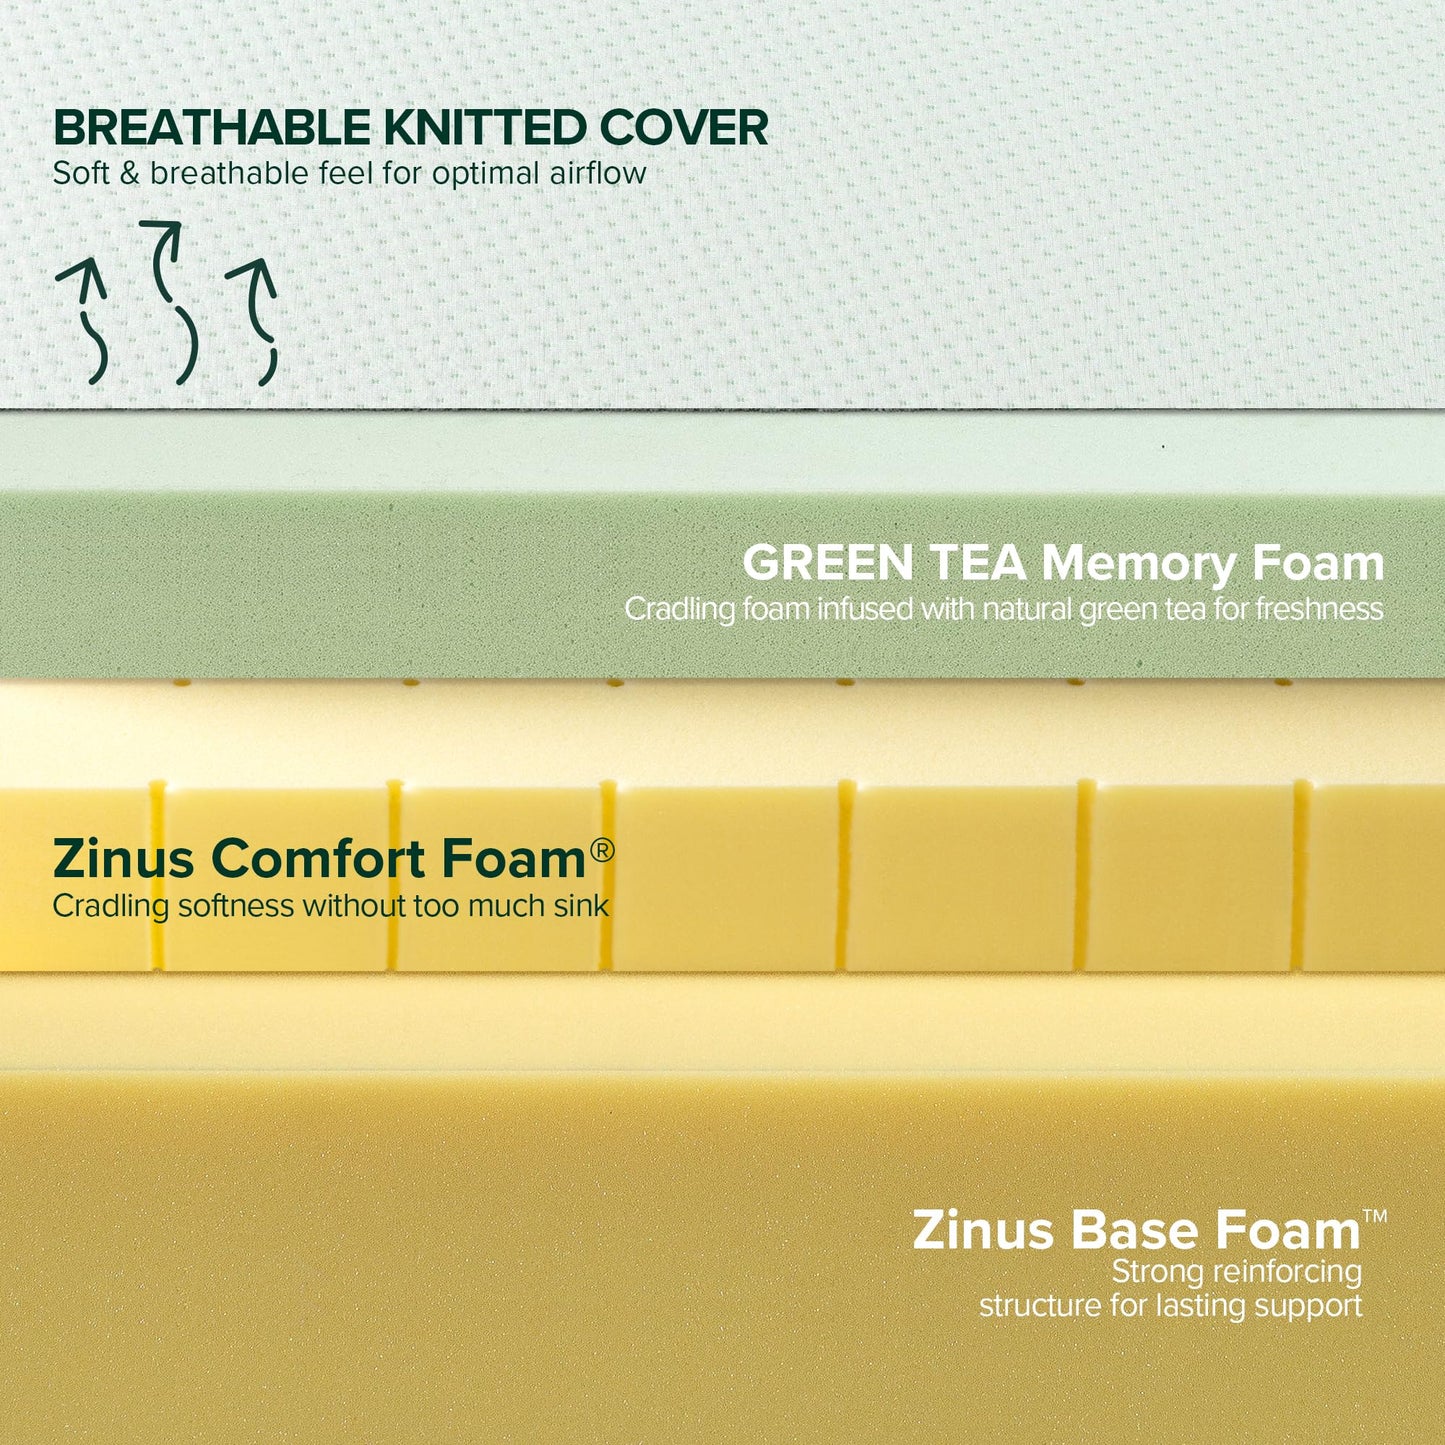 ZINUS 8 Inch Green Tea Memory Foam Mattress, Fiberglass Free, Patented Custom Contour Support, Sturdy Base Foam, CertiPUR-US Certified, Bed-in-a-box, Short Queen, White